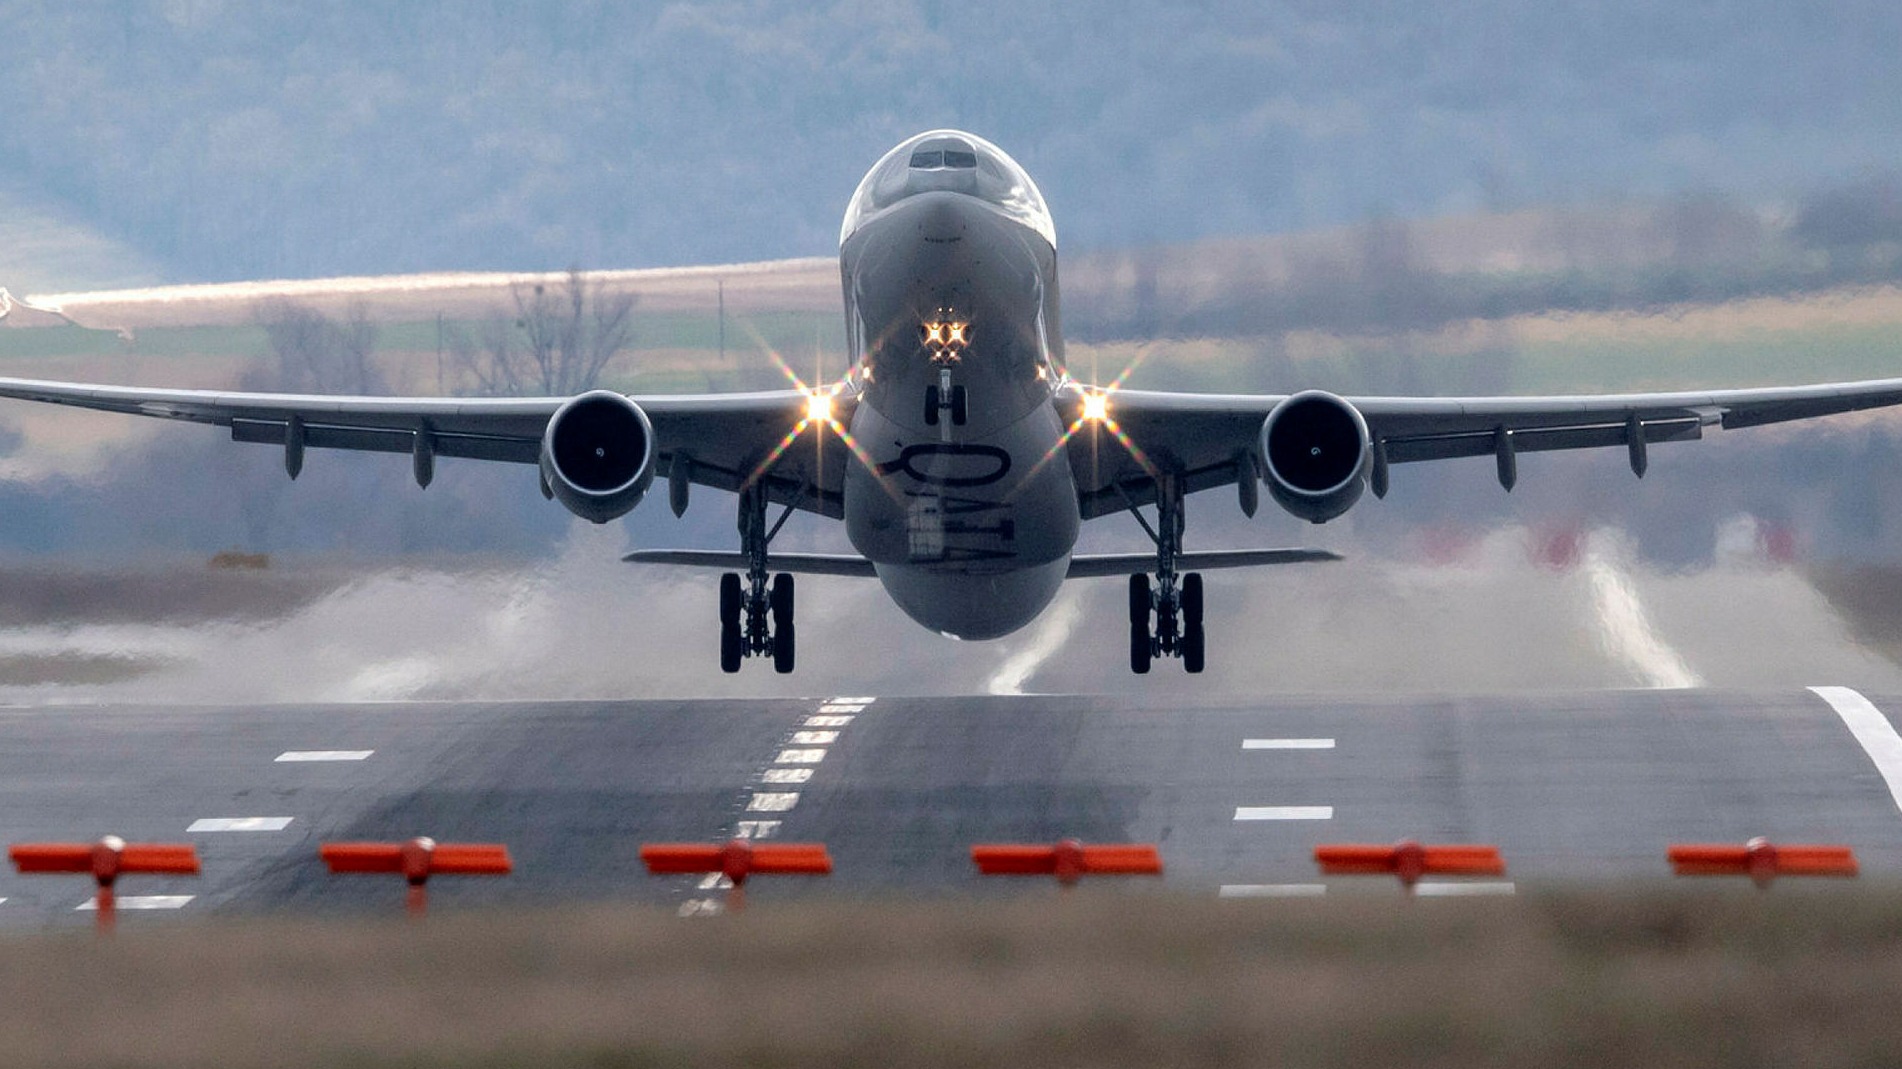 Câu chuyện tranh chấp giữa Airbus và Qatar Airways tại Việt Nam đang là chủ đề nóng được đưa ra tranh luận trong thời gian qua. Hãy cùng khám phá thêm về những diễn biến và ảnh hưởng của vụ việc này lên ngành hàng không!